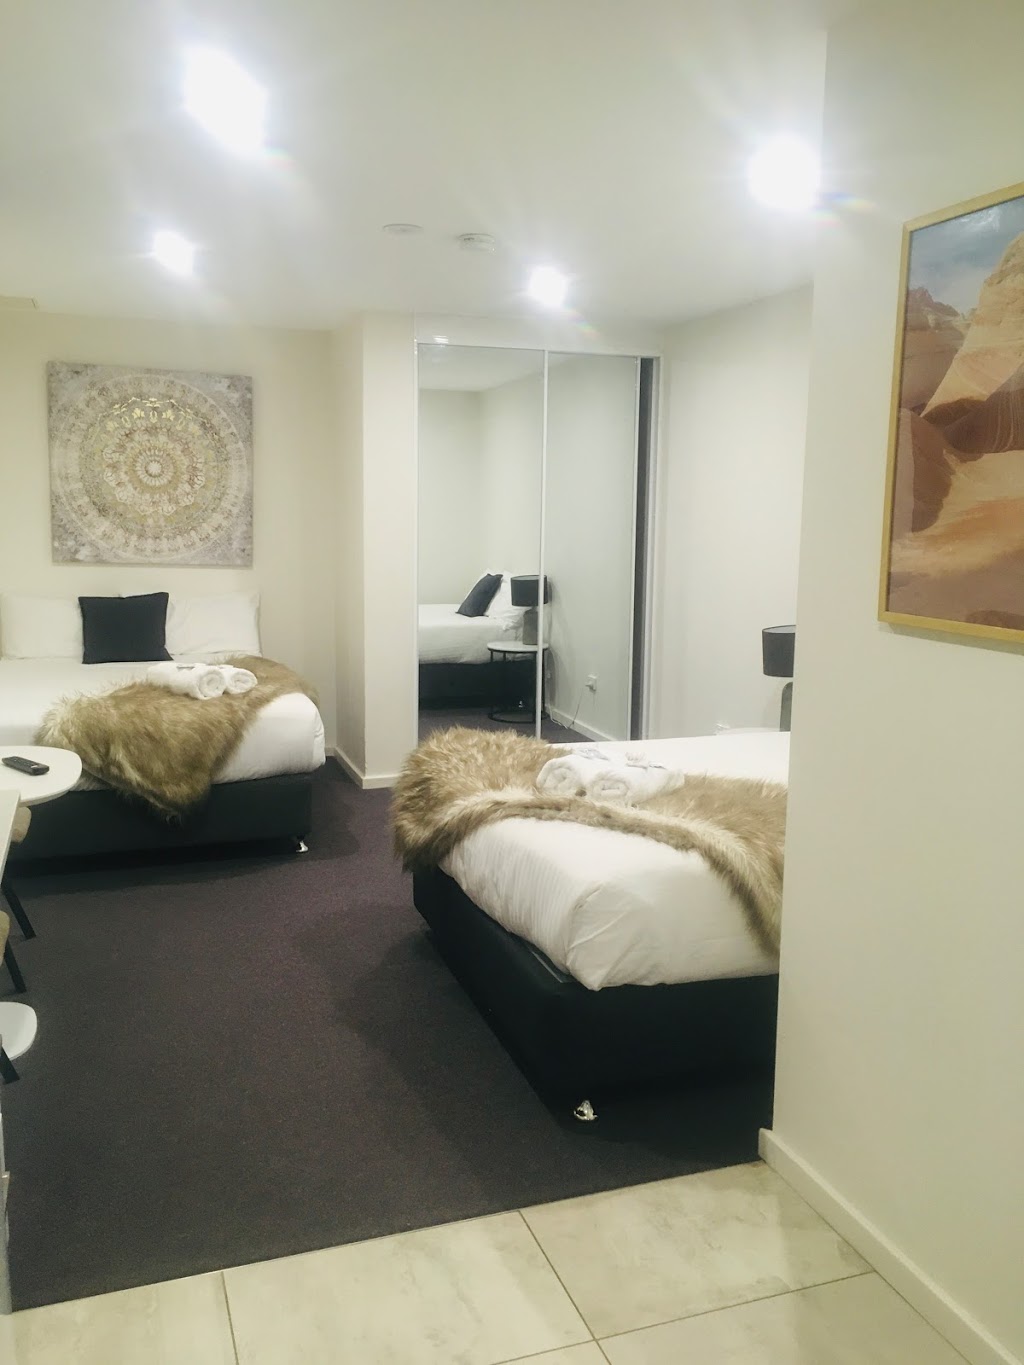 Carlton Suites Goulburn | lodging | 258 Sloane St, Goulburn NSW 2580, Australia | 0475000777 OR +61 475 000 777